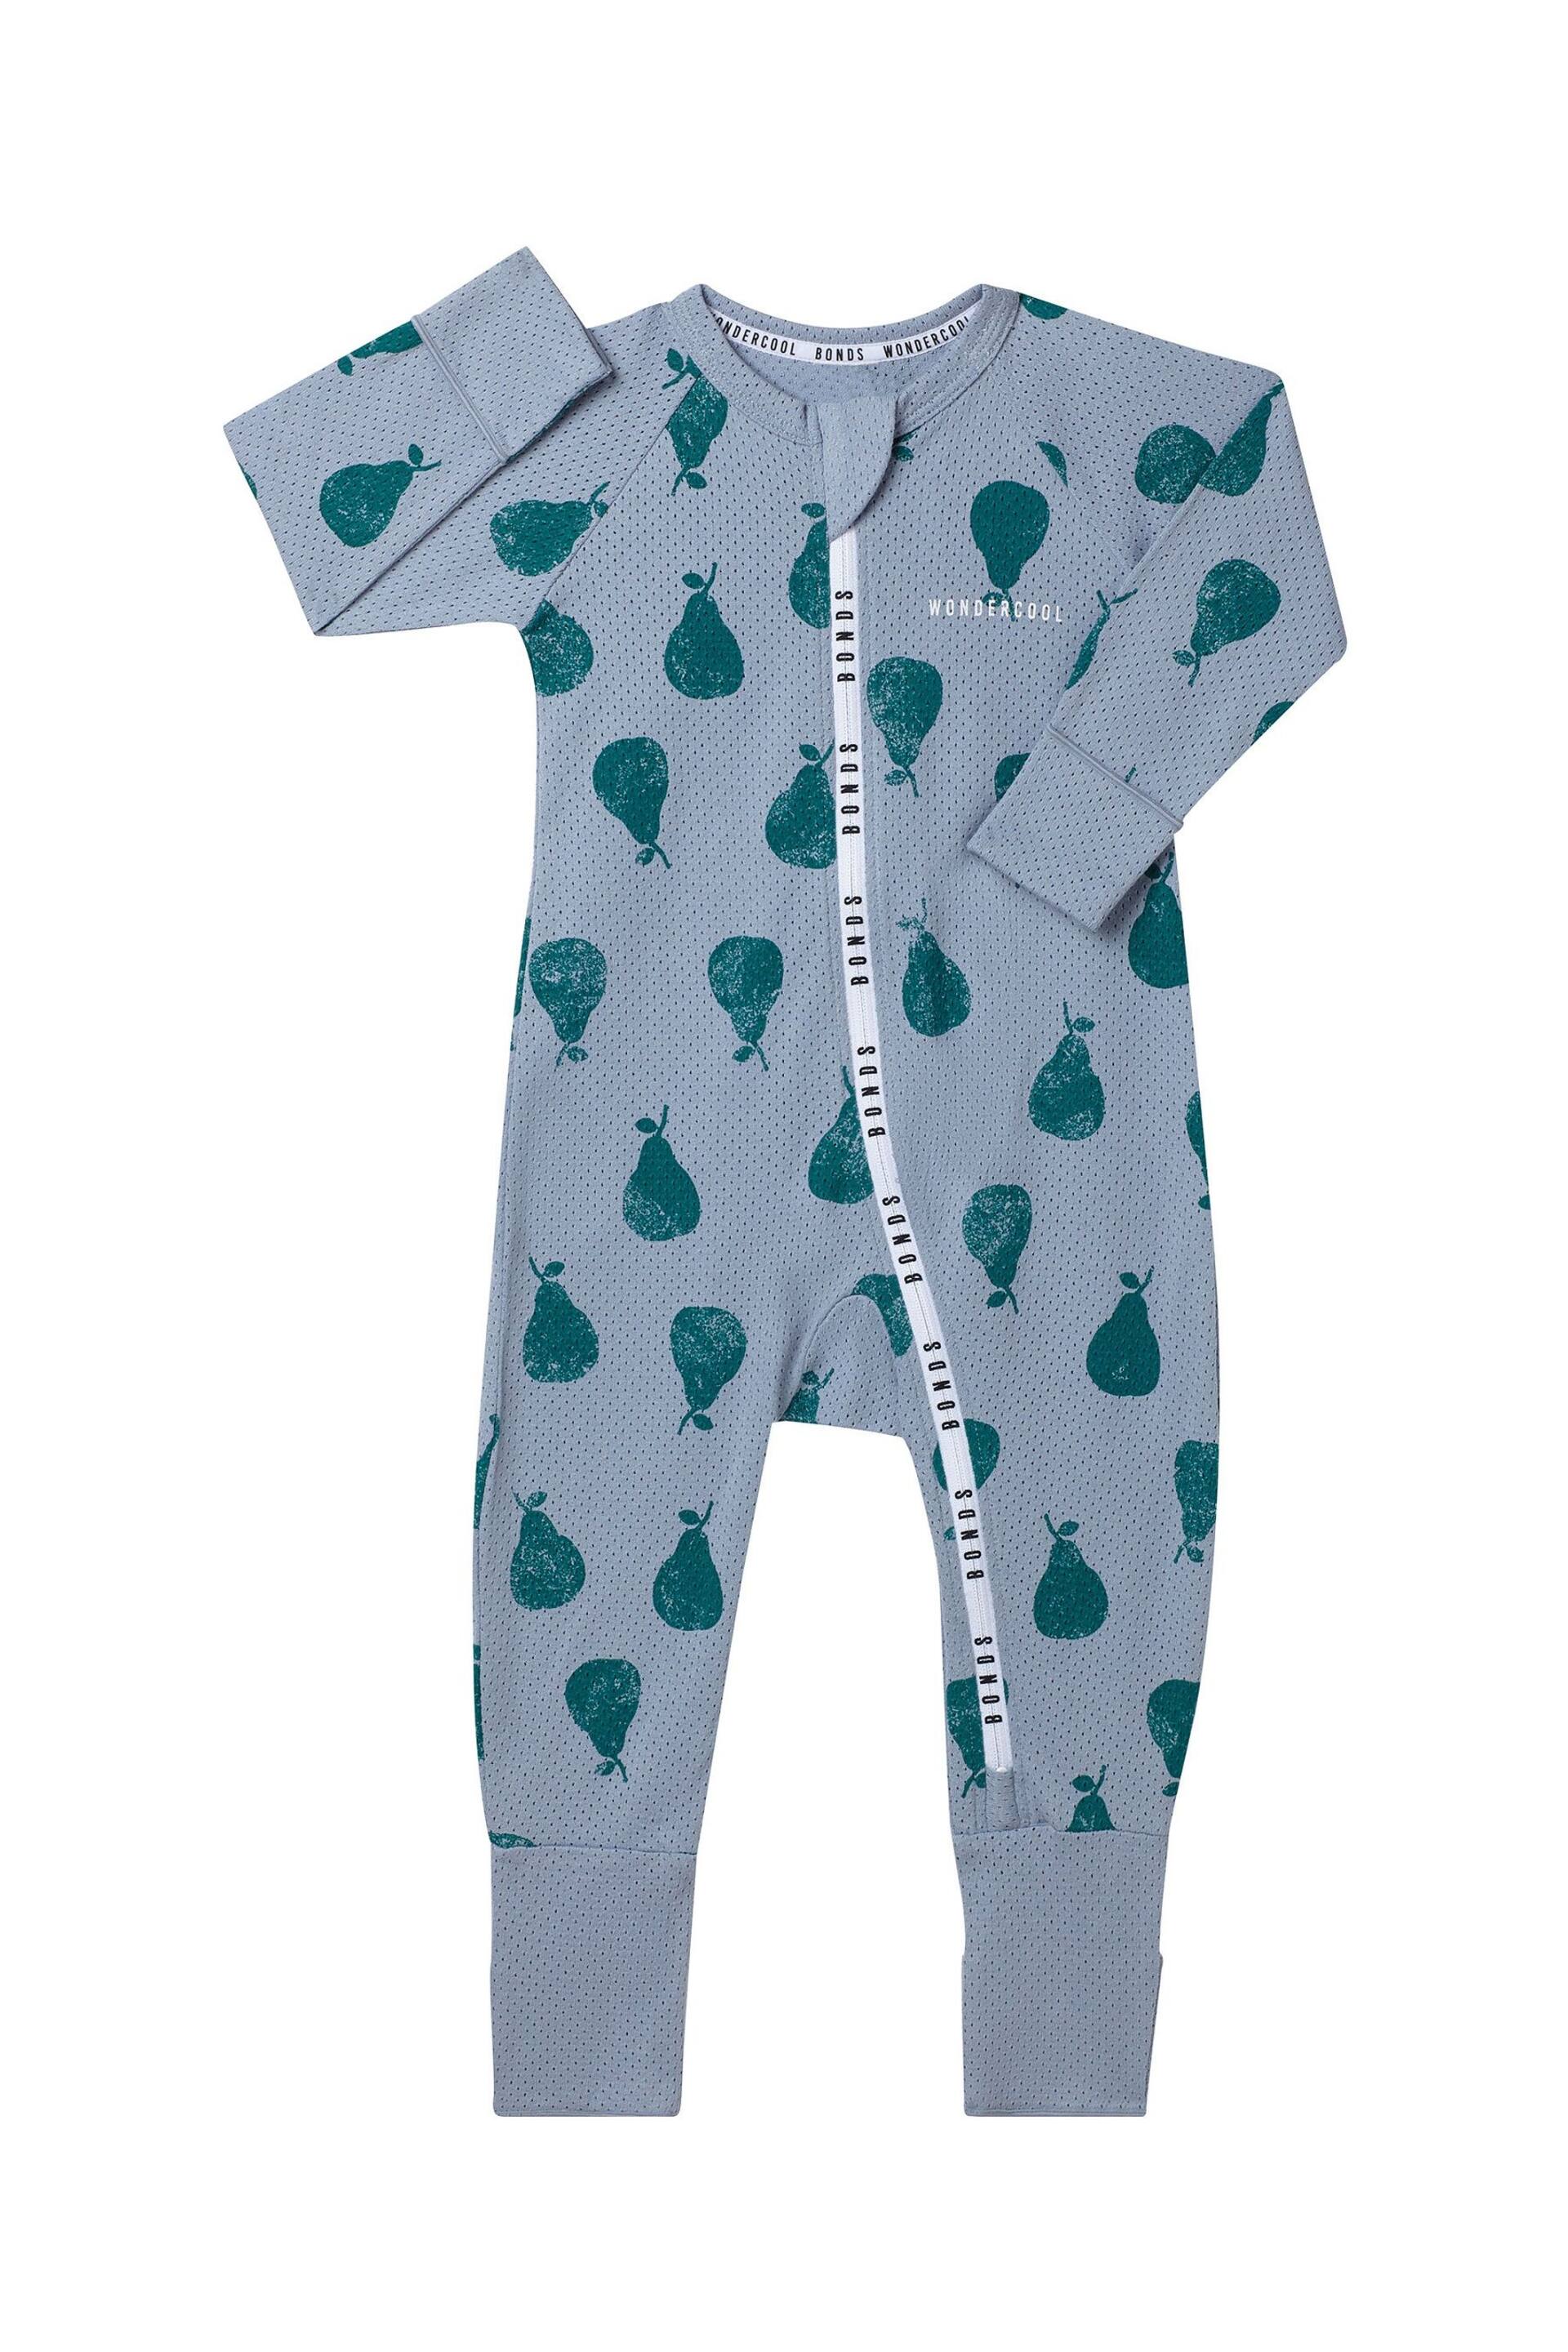 Bonds Blue Fruit Design Zip Sleepsuit - Image 1 of 2